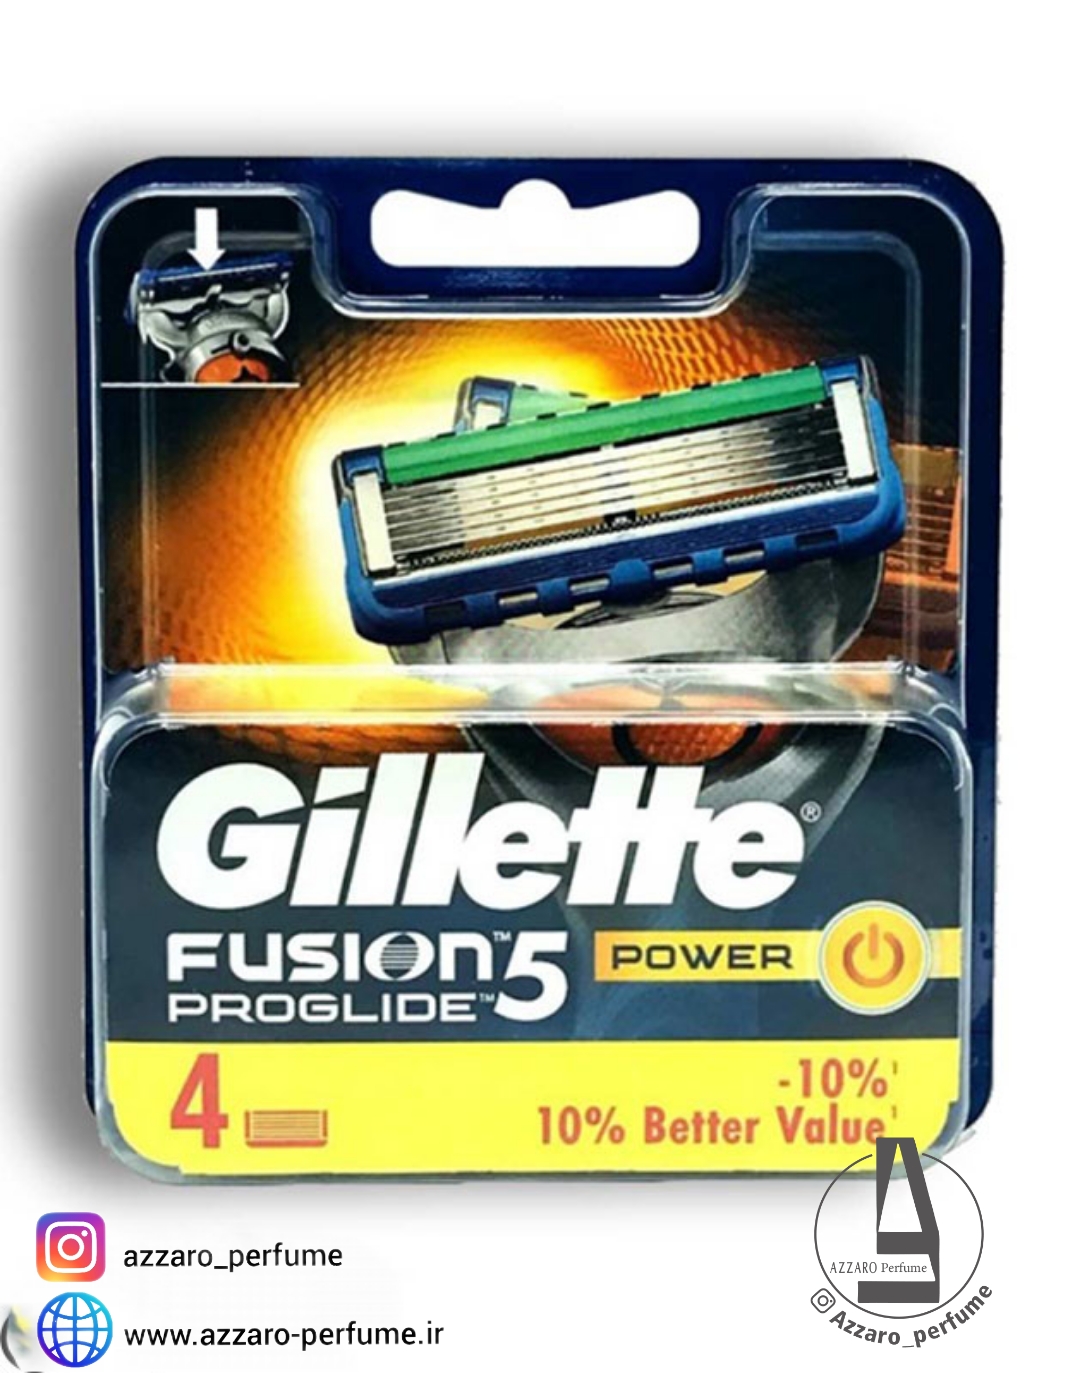 تیغ یدک ژیلت مدل فیوژن 5 پروگلاید پاور بسته 4 عددی اصل آلمان Gillette Fusion 5 ProGlide Power-فروشگاه اینترنتی آرایشی بهداشتی آزارو ‌